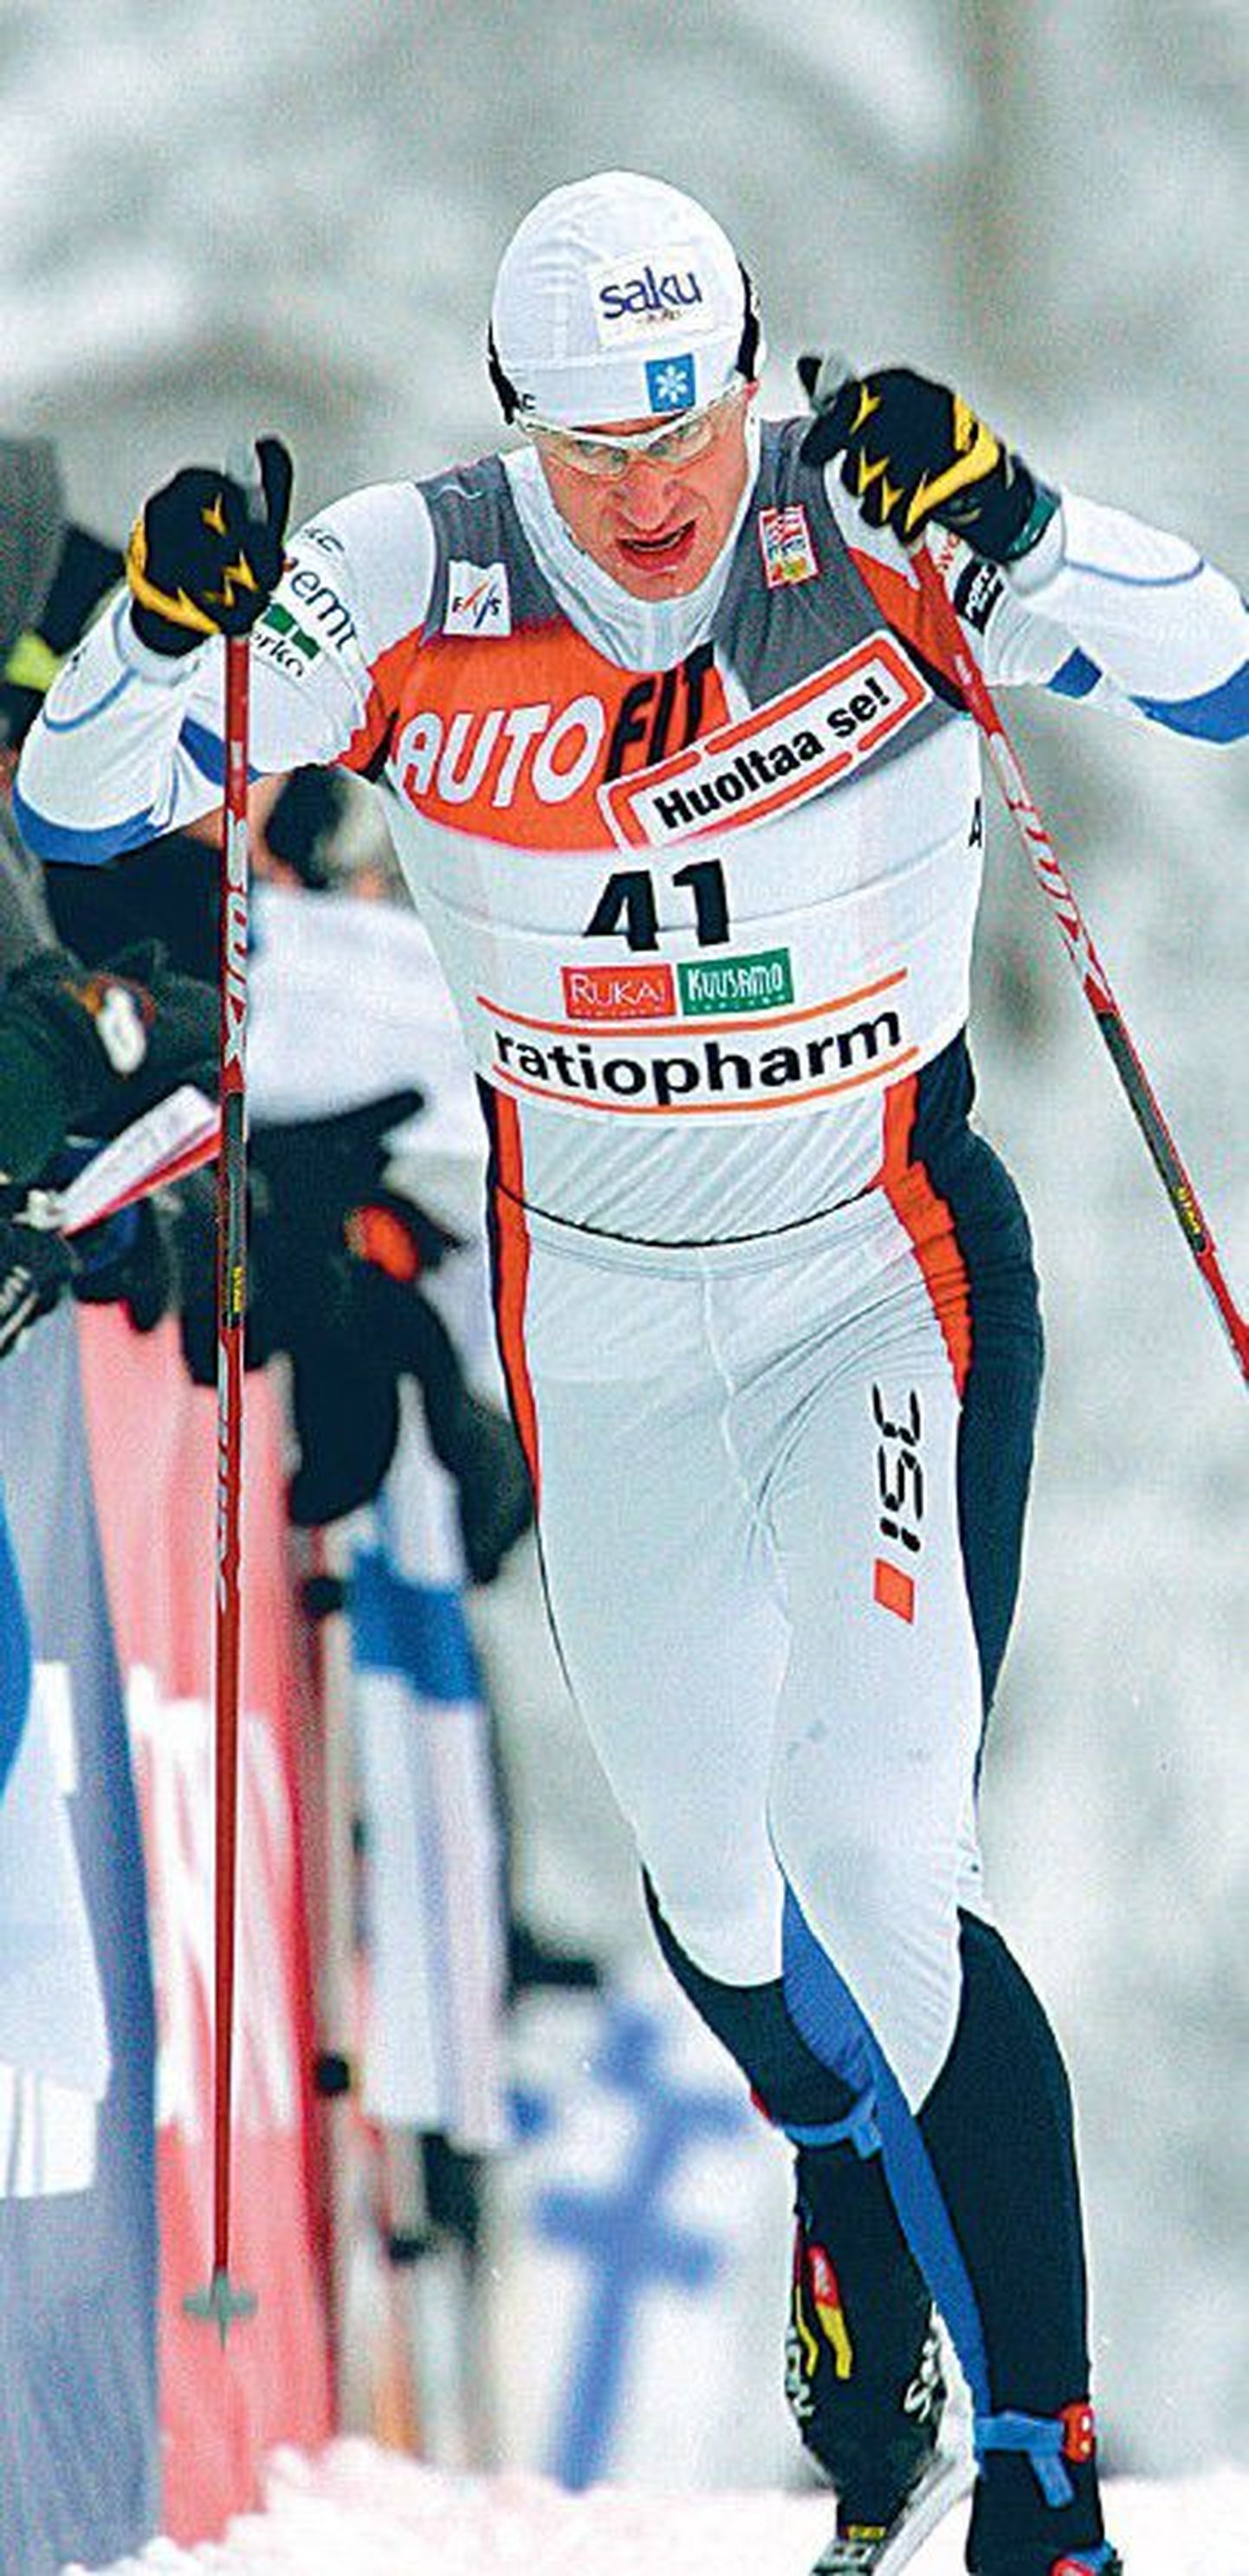 31-aastase Priit Naruski parimaks tulemuseks sel hooajal jäi Kuusamo MK-etapi 19. koht. Eesmärgid ei täitunud.